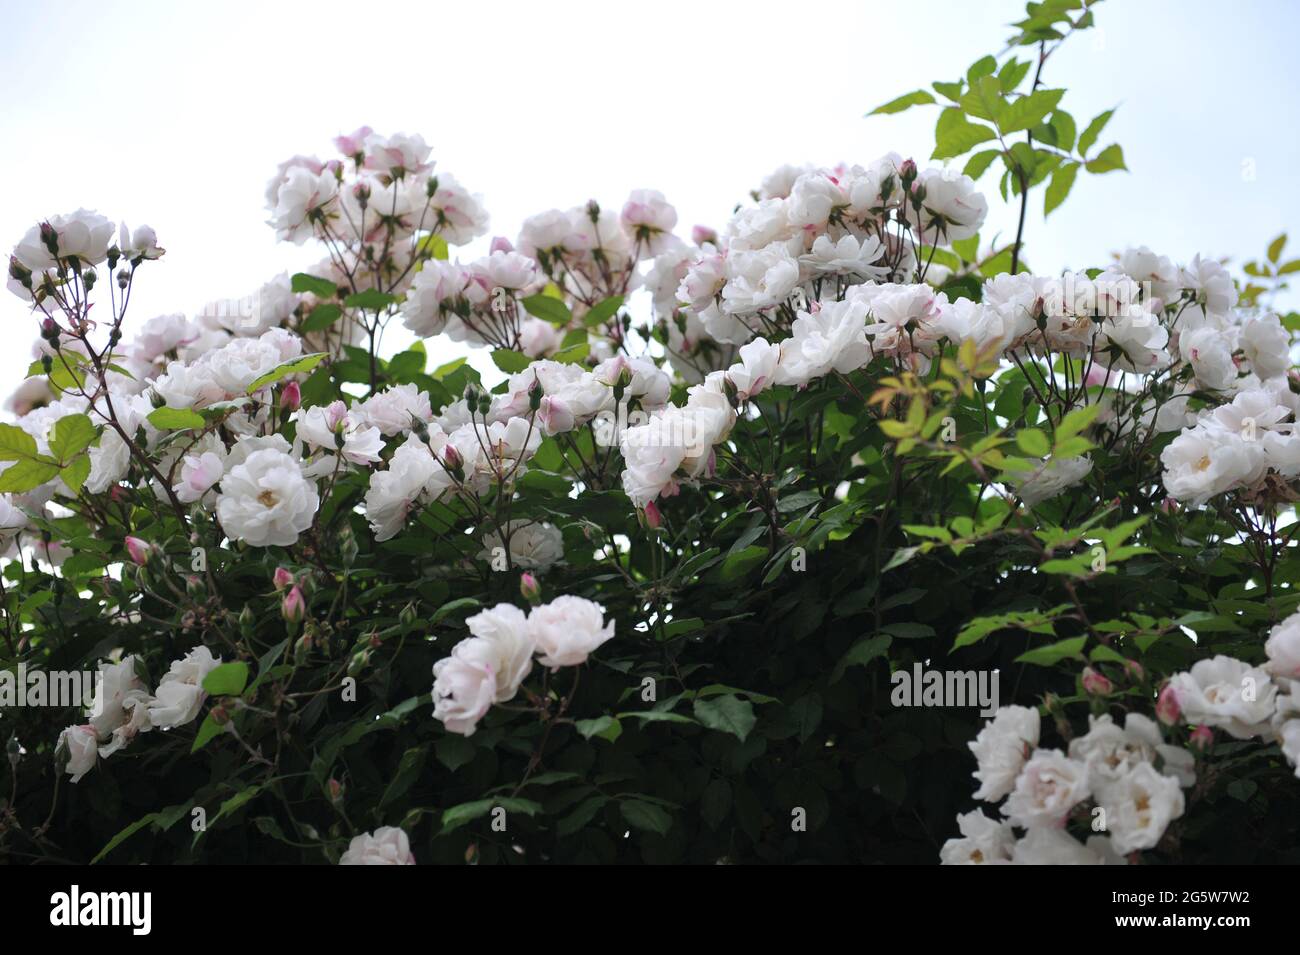 Weiße Ayrshire-Rose (Rosa) Venusta Pendula blüht im Juni auf einem Bogen in einem Garten Stockfoto